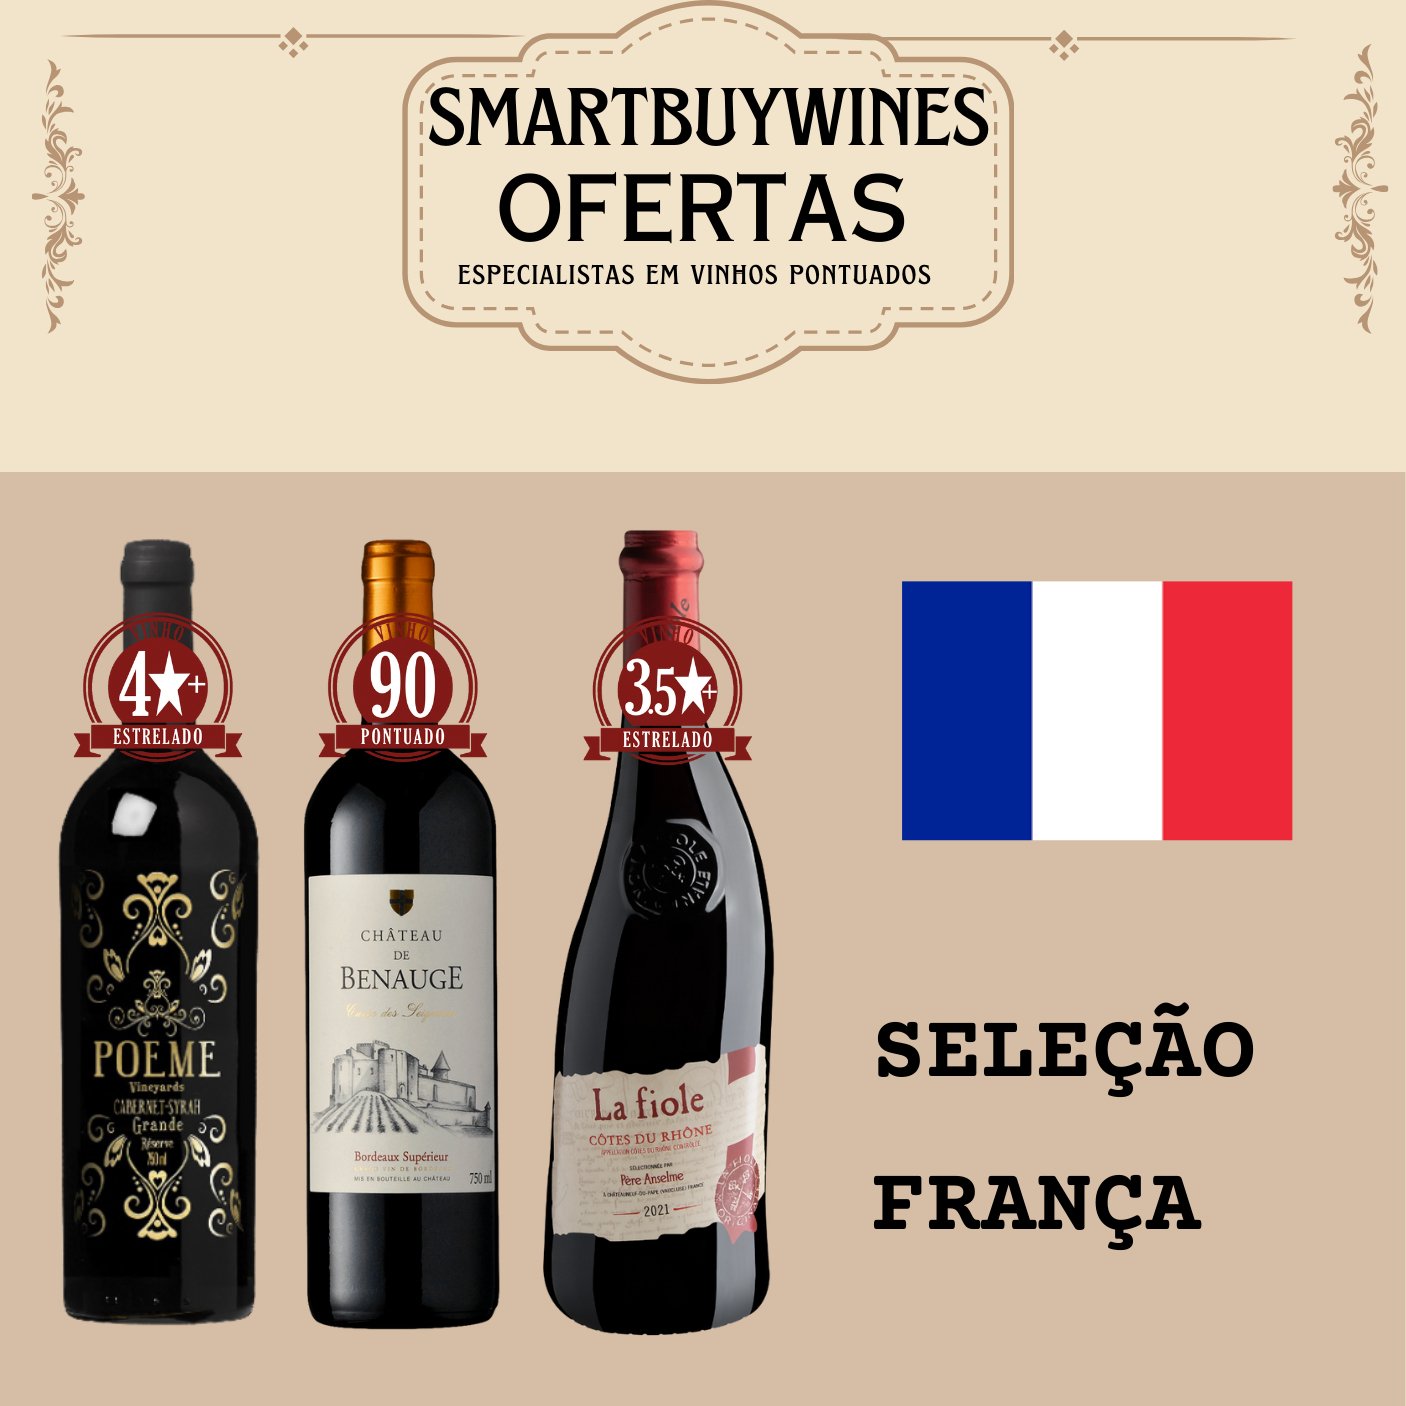 Seleção em oferta - França - caixa de 3 vinhos - SmartBuyWines.com.br